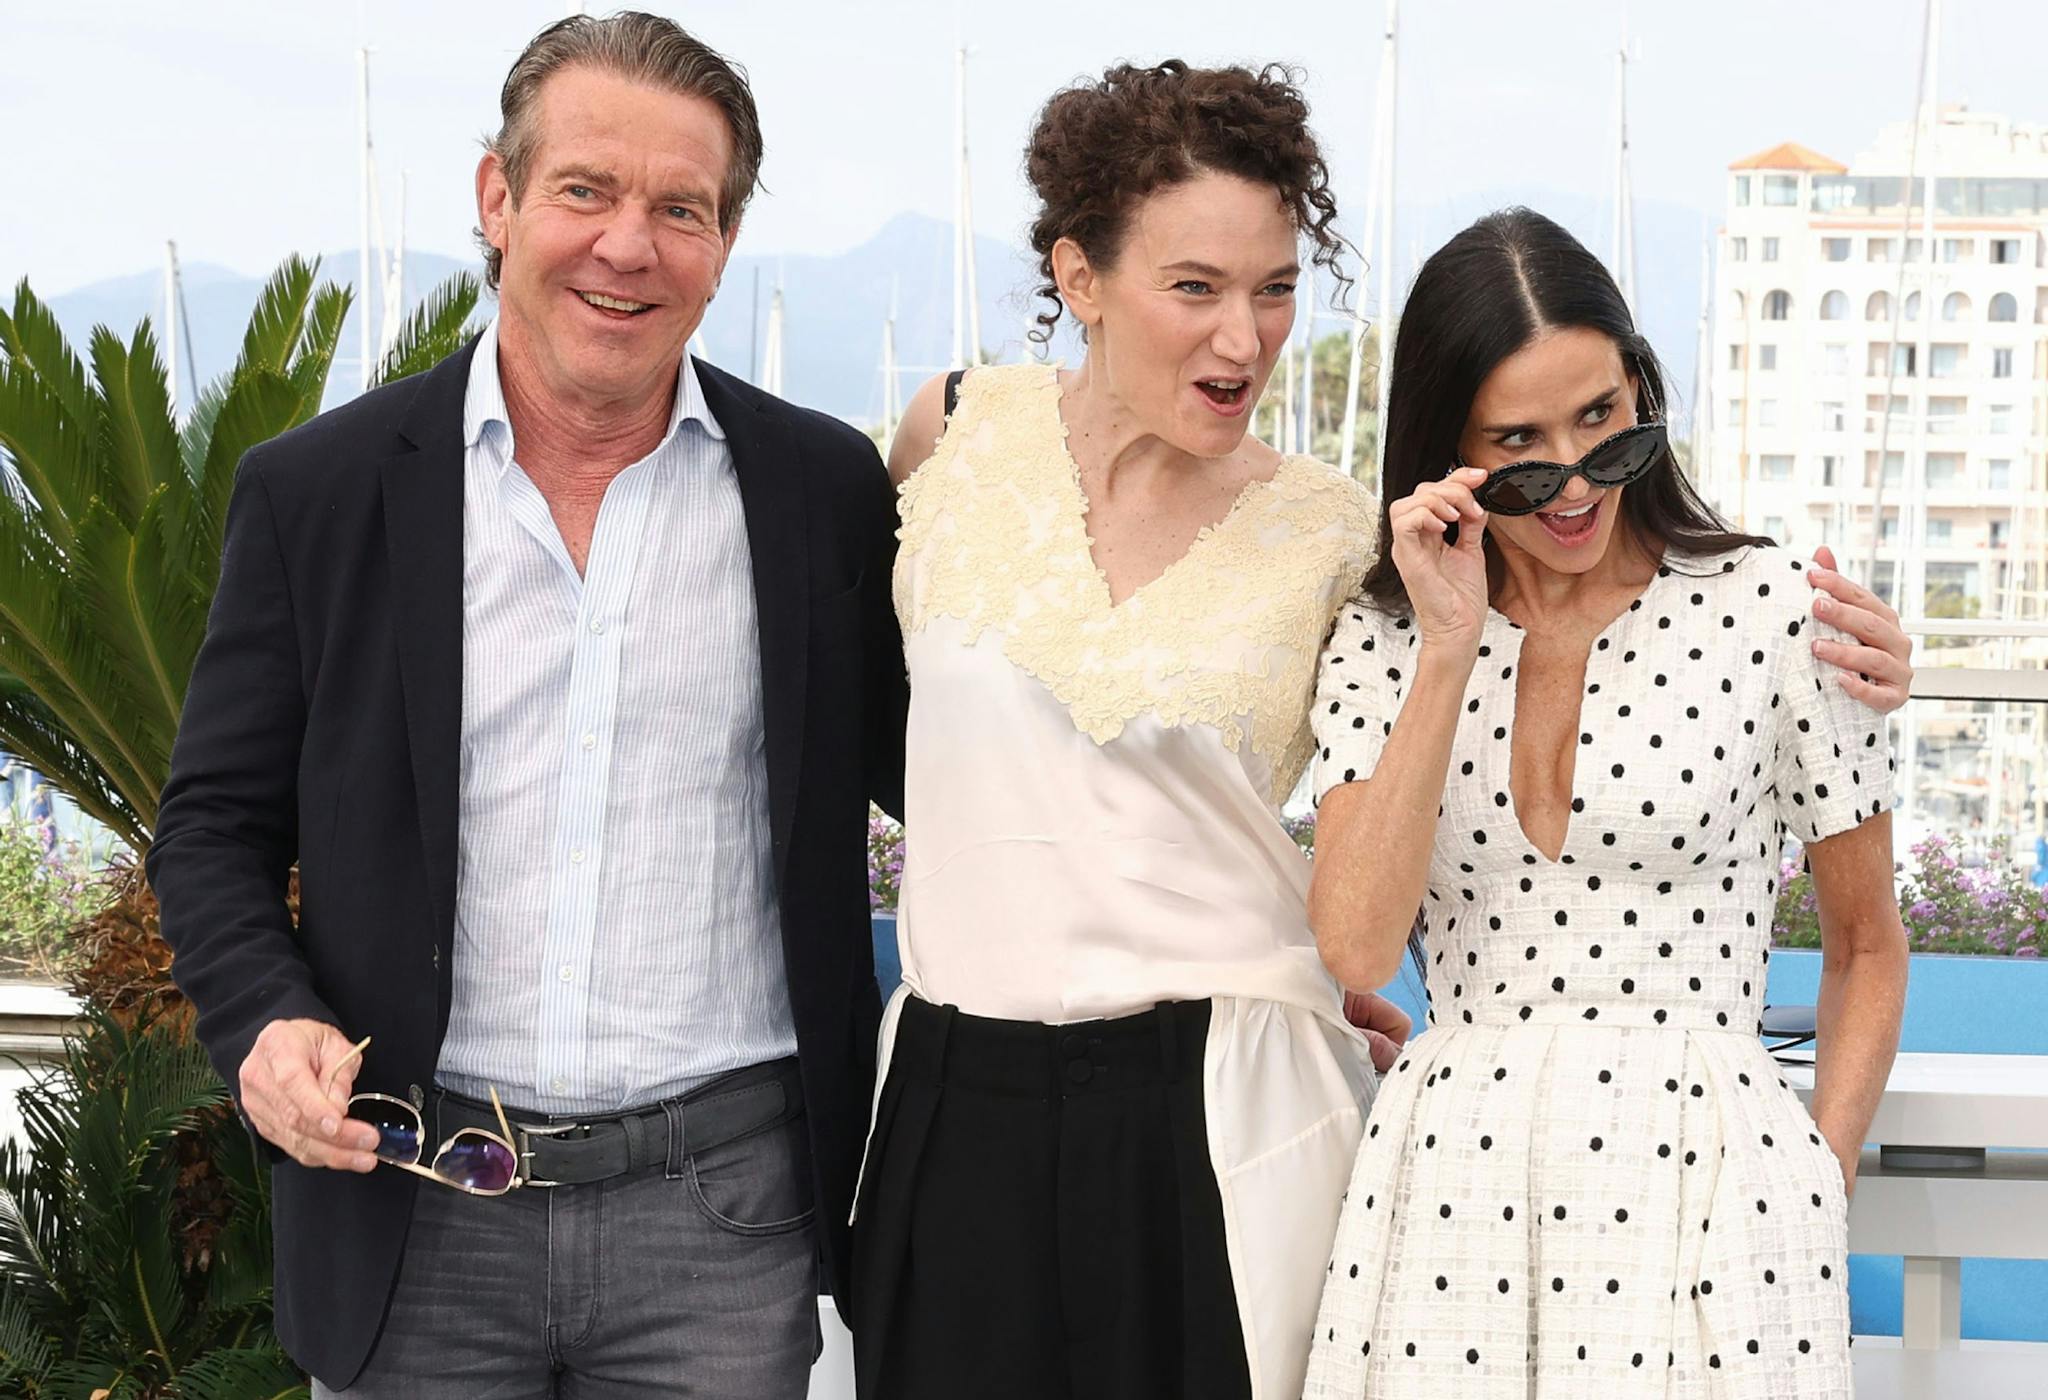 La directora Coralie Fargeat y los actores Demi Moore y Dennis Quaid en el photocall de 'The substance' en Cannes